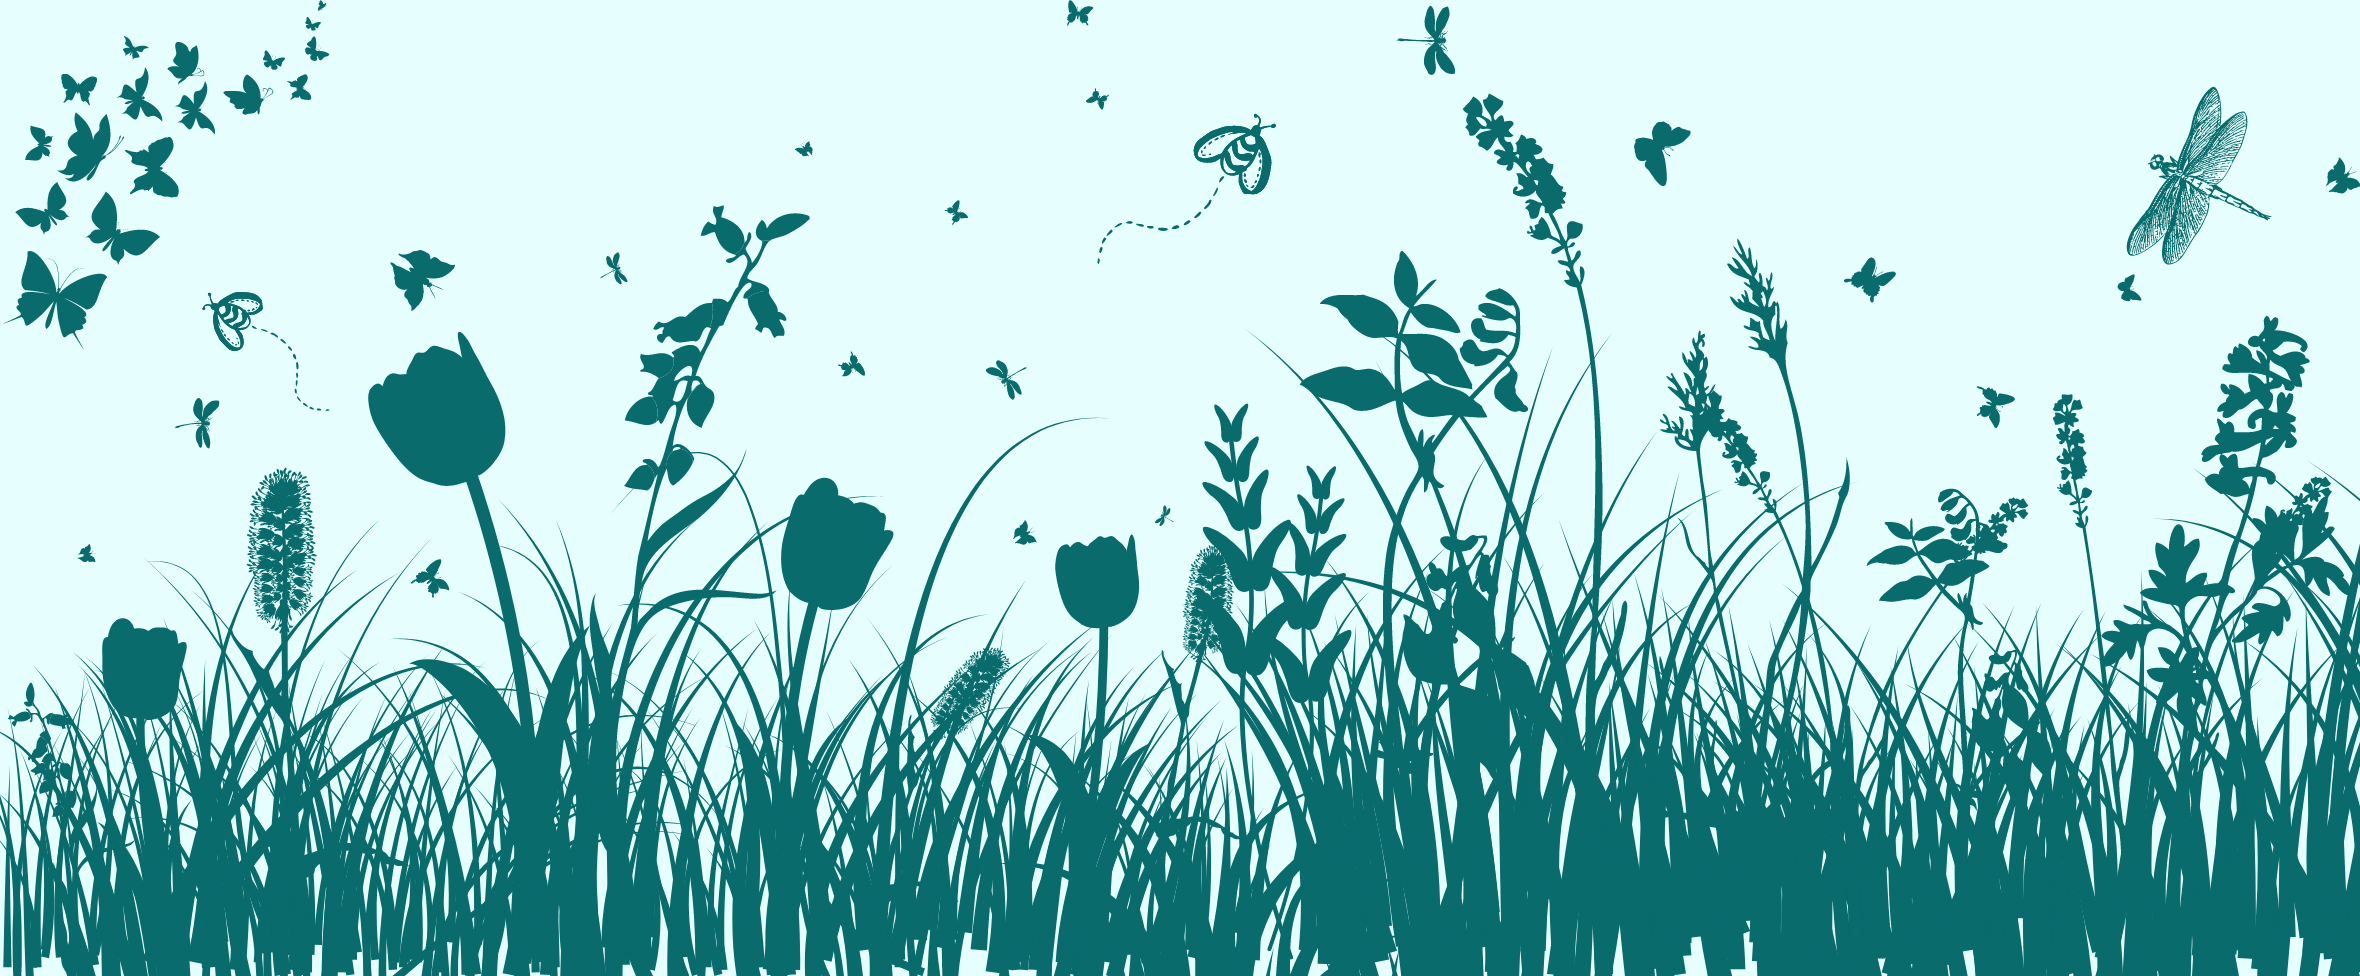 Grafisk bild av en äng med växter och insekter.